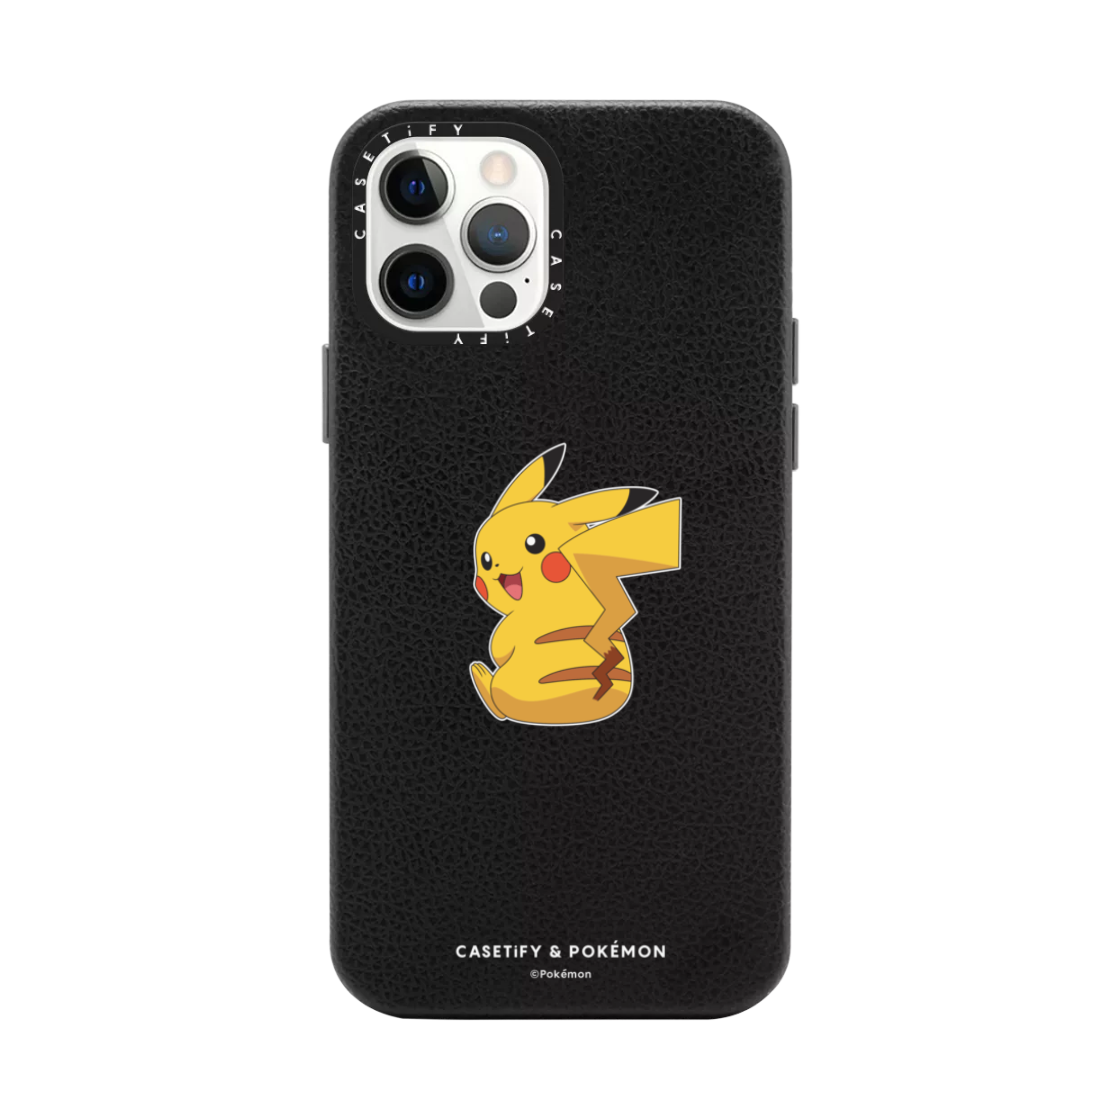 CASETiFY x Pokémon Drop 2 Pikachu